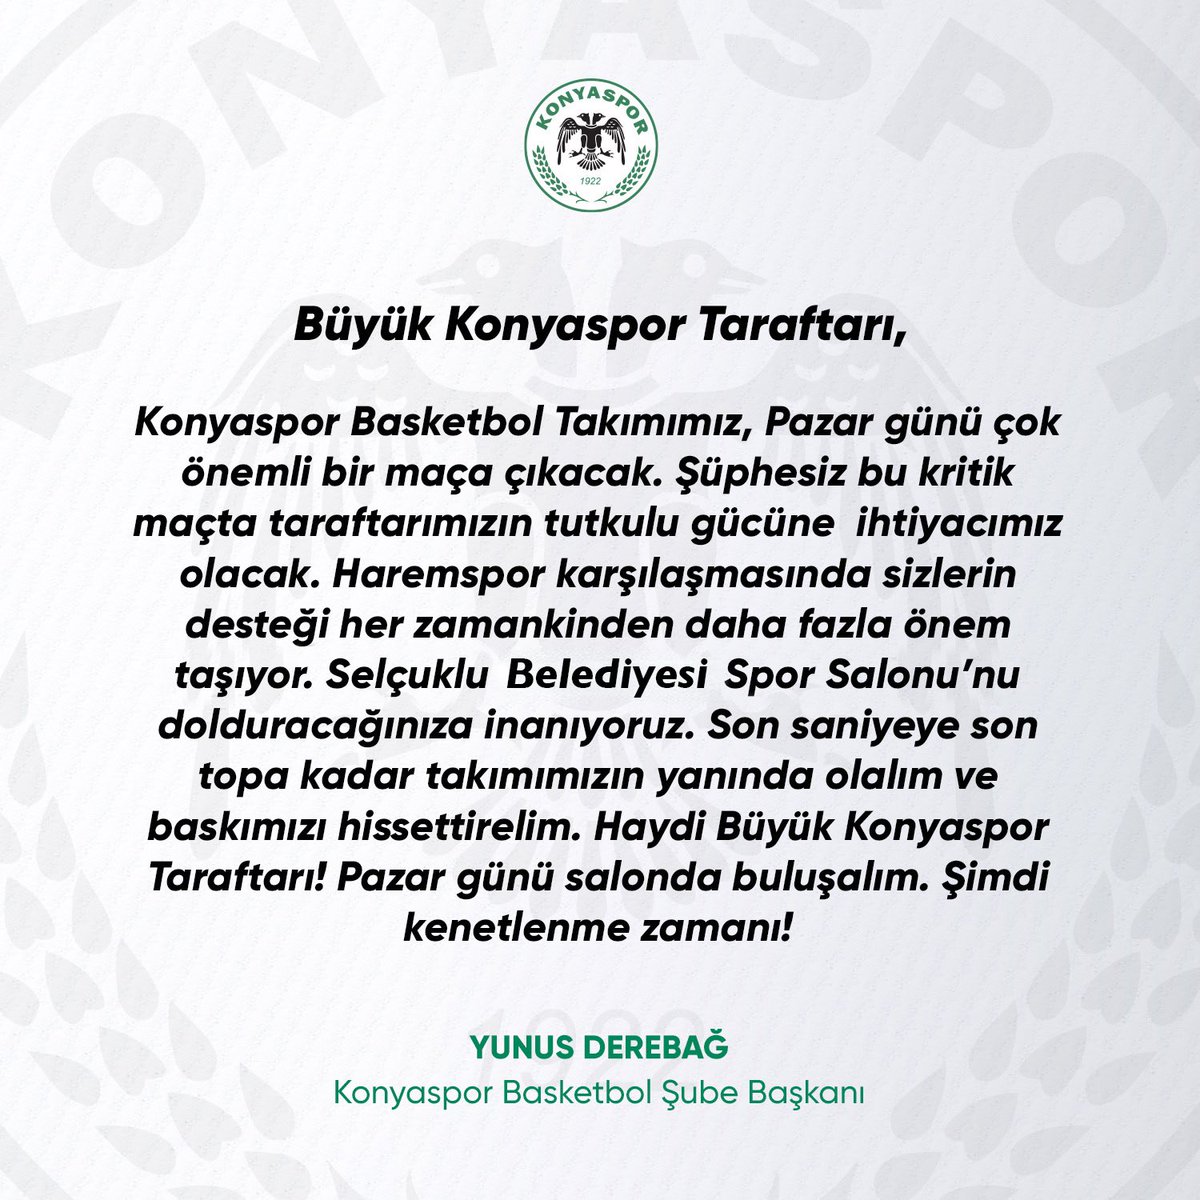 ”Son saniyeye kadar takımımızın yanında olalım.” Basketbol Şube Sorumlumuz Yunus Derebağ, taraftarımıza çağrıda bulundu.